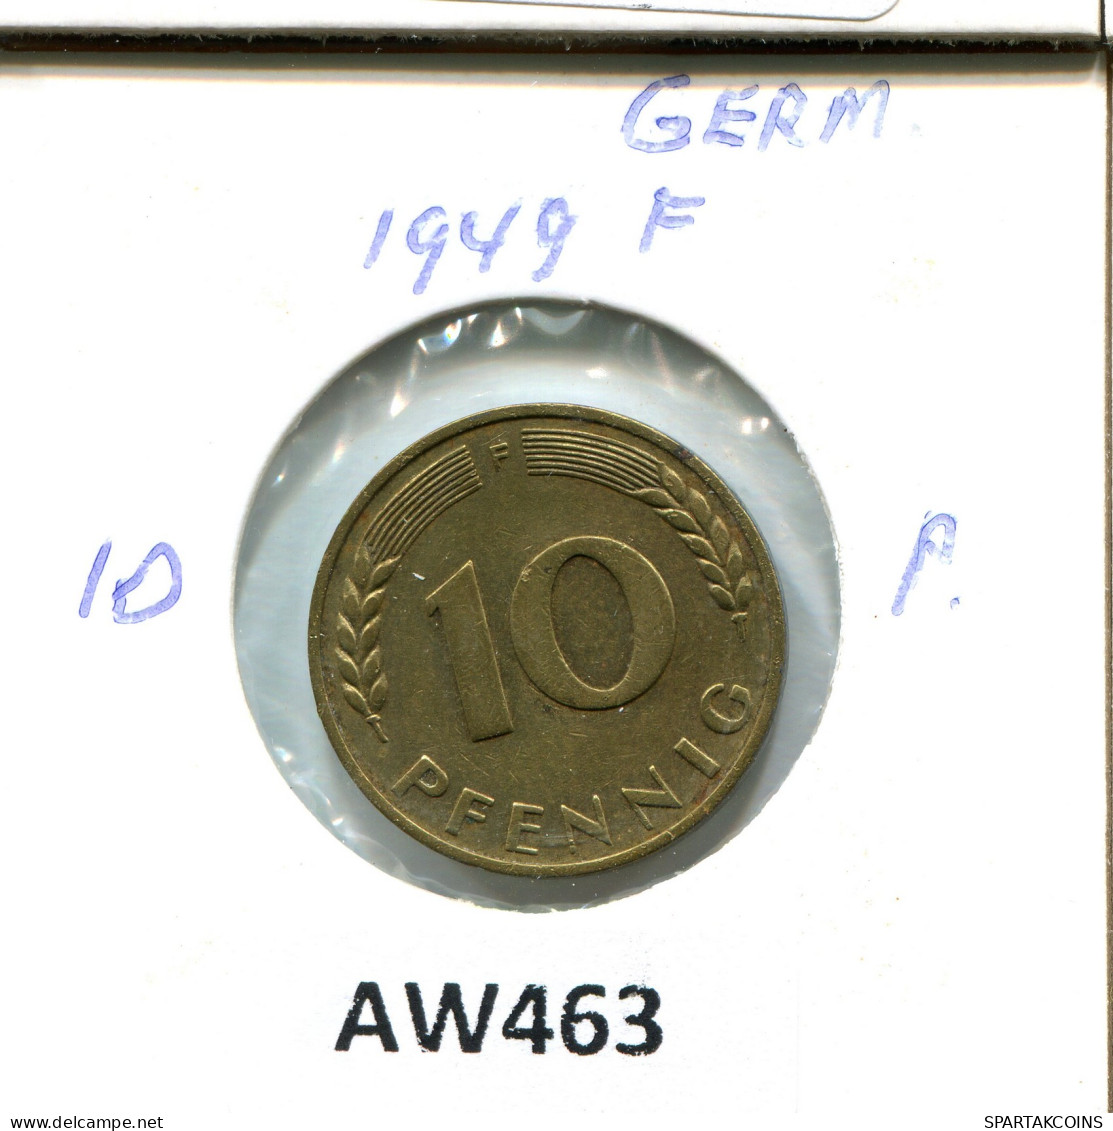 10 PFENNIG 1949 F GERMANY Coin #AW463.U - 10 Pfennig